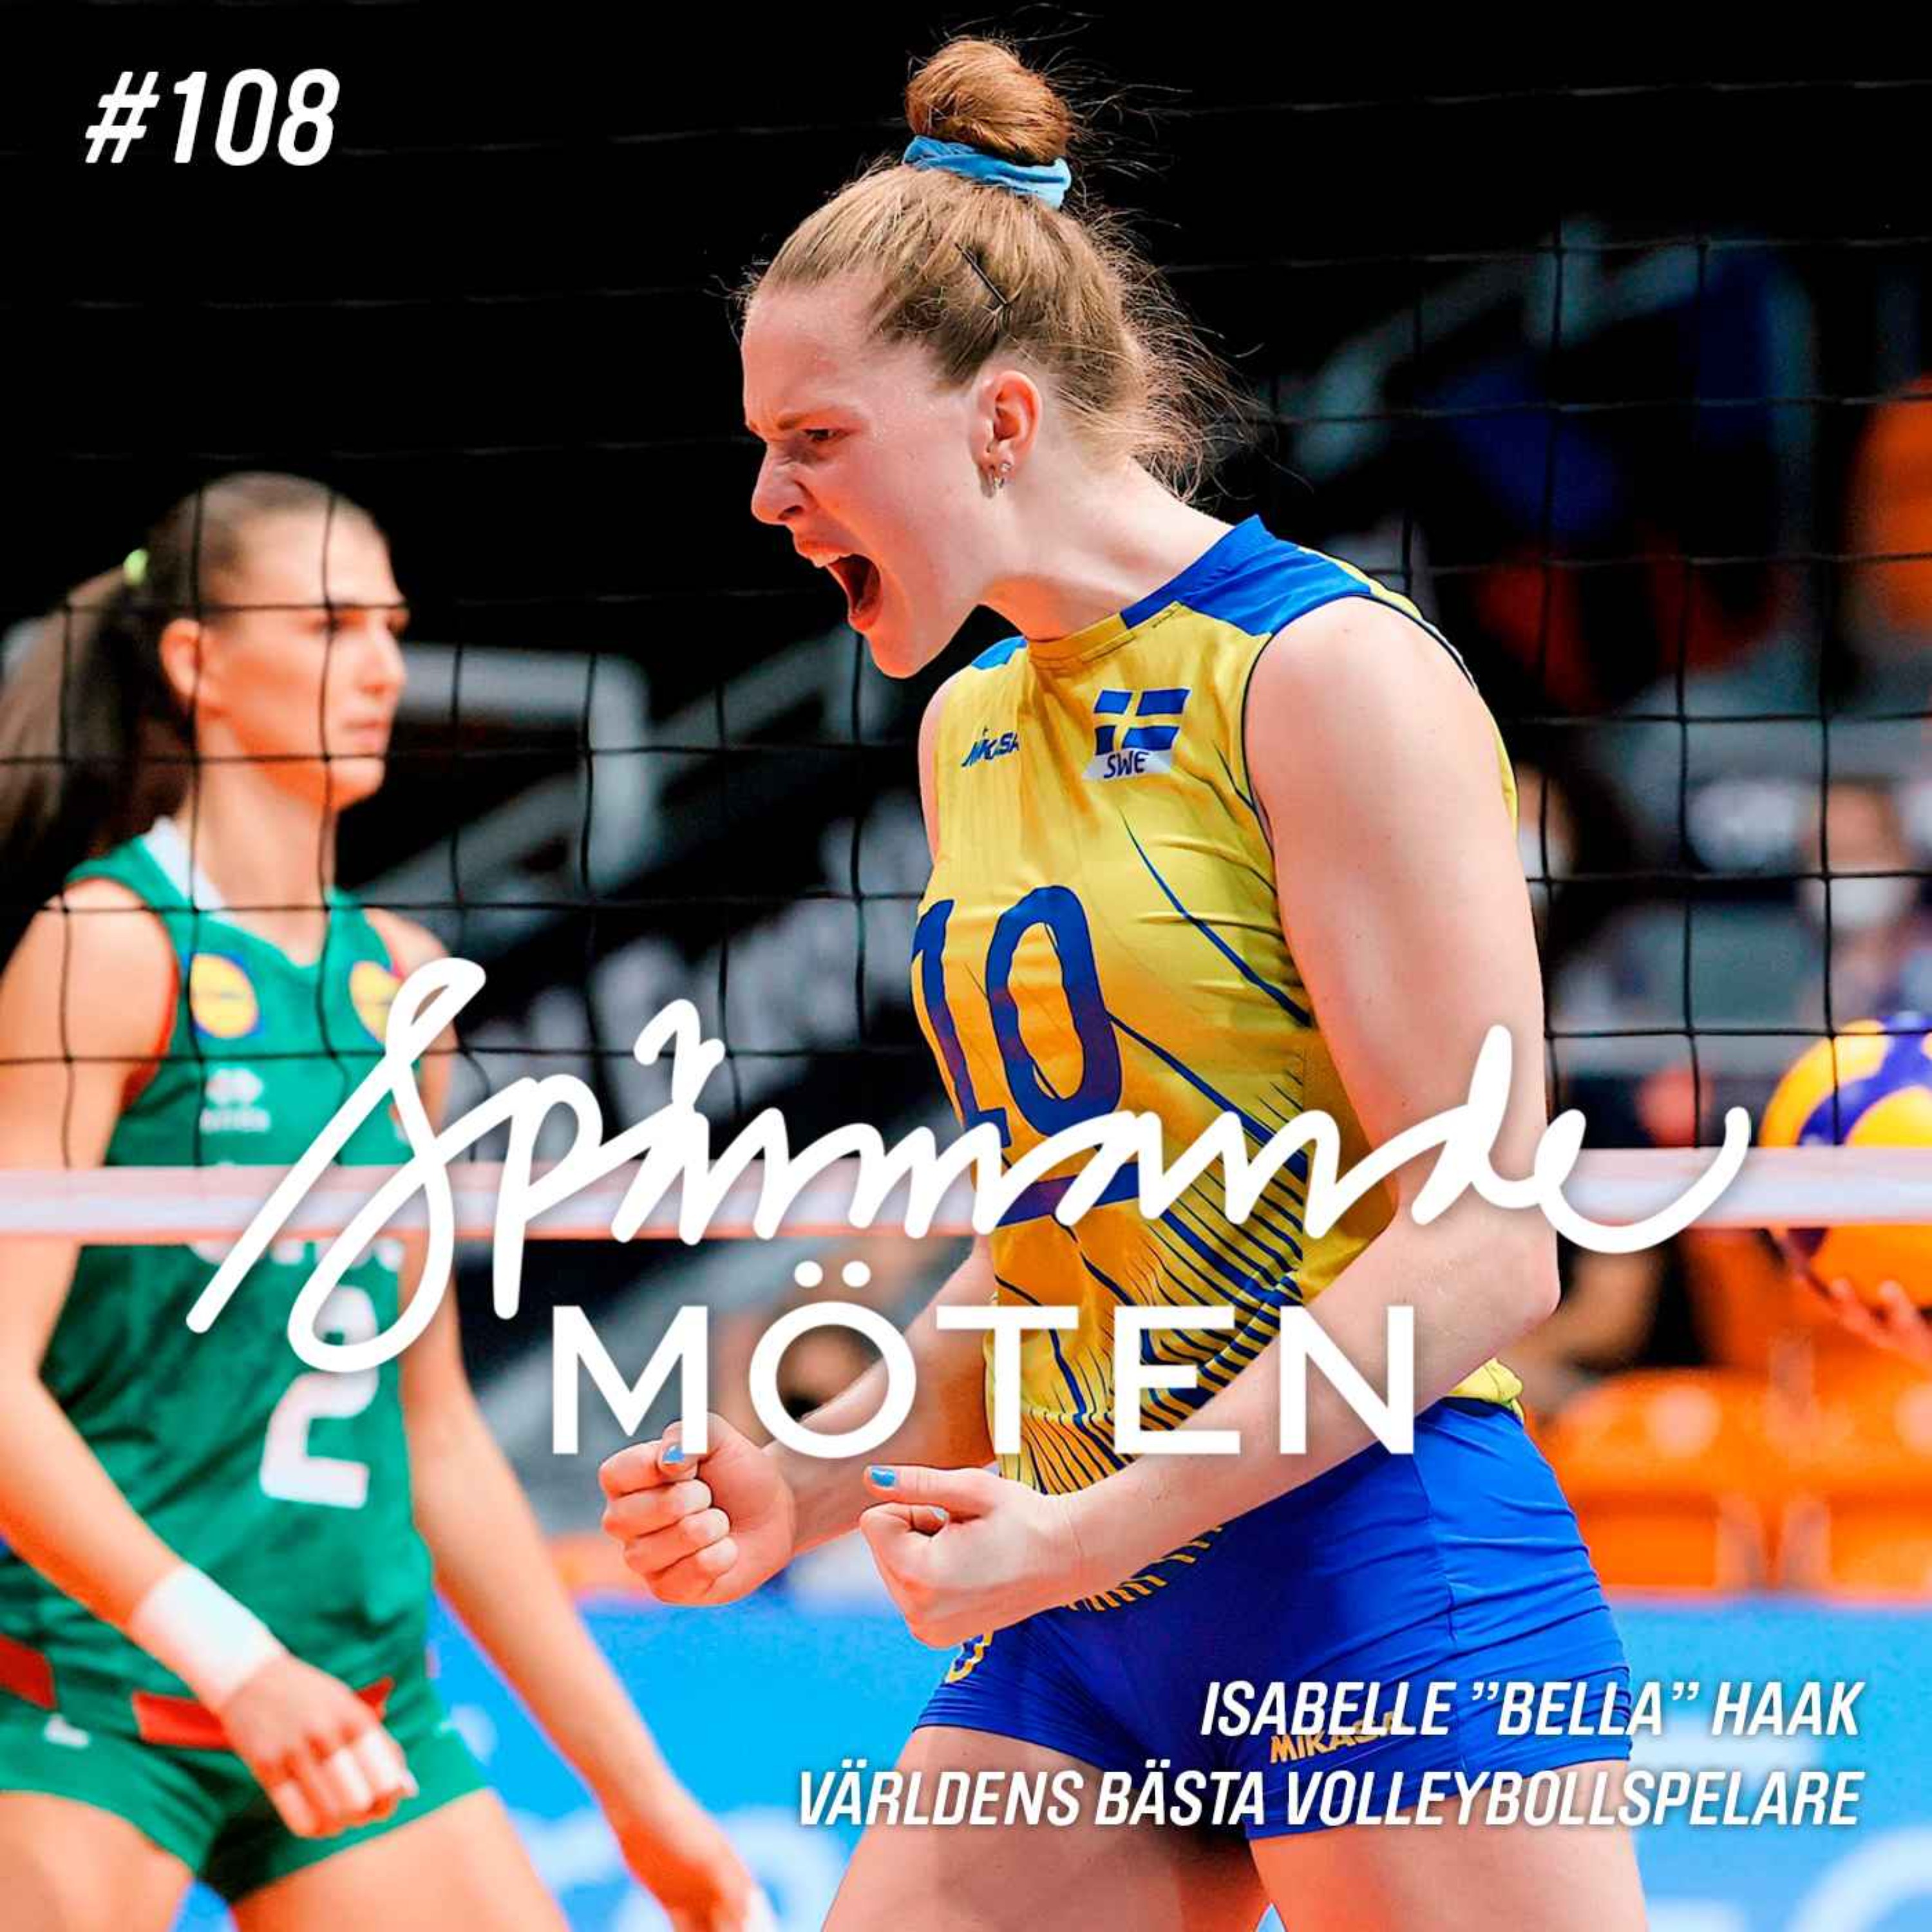 Isabelle "Bella" Haak, världens bästa volleybollspelare